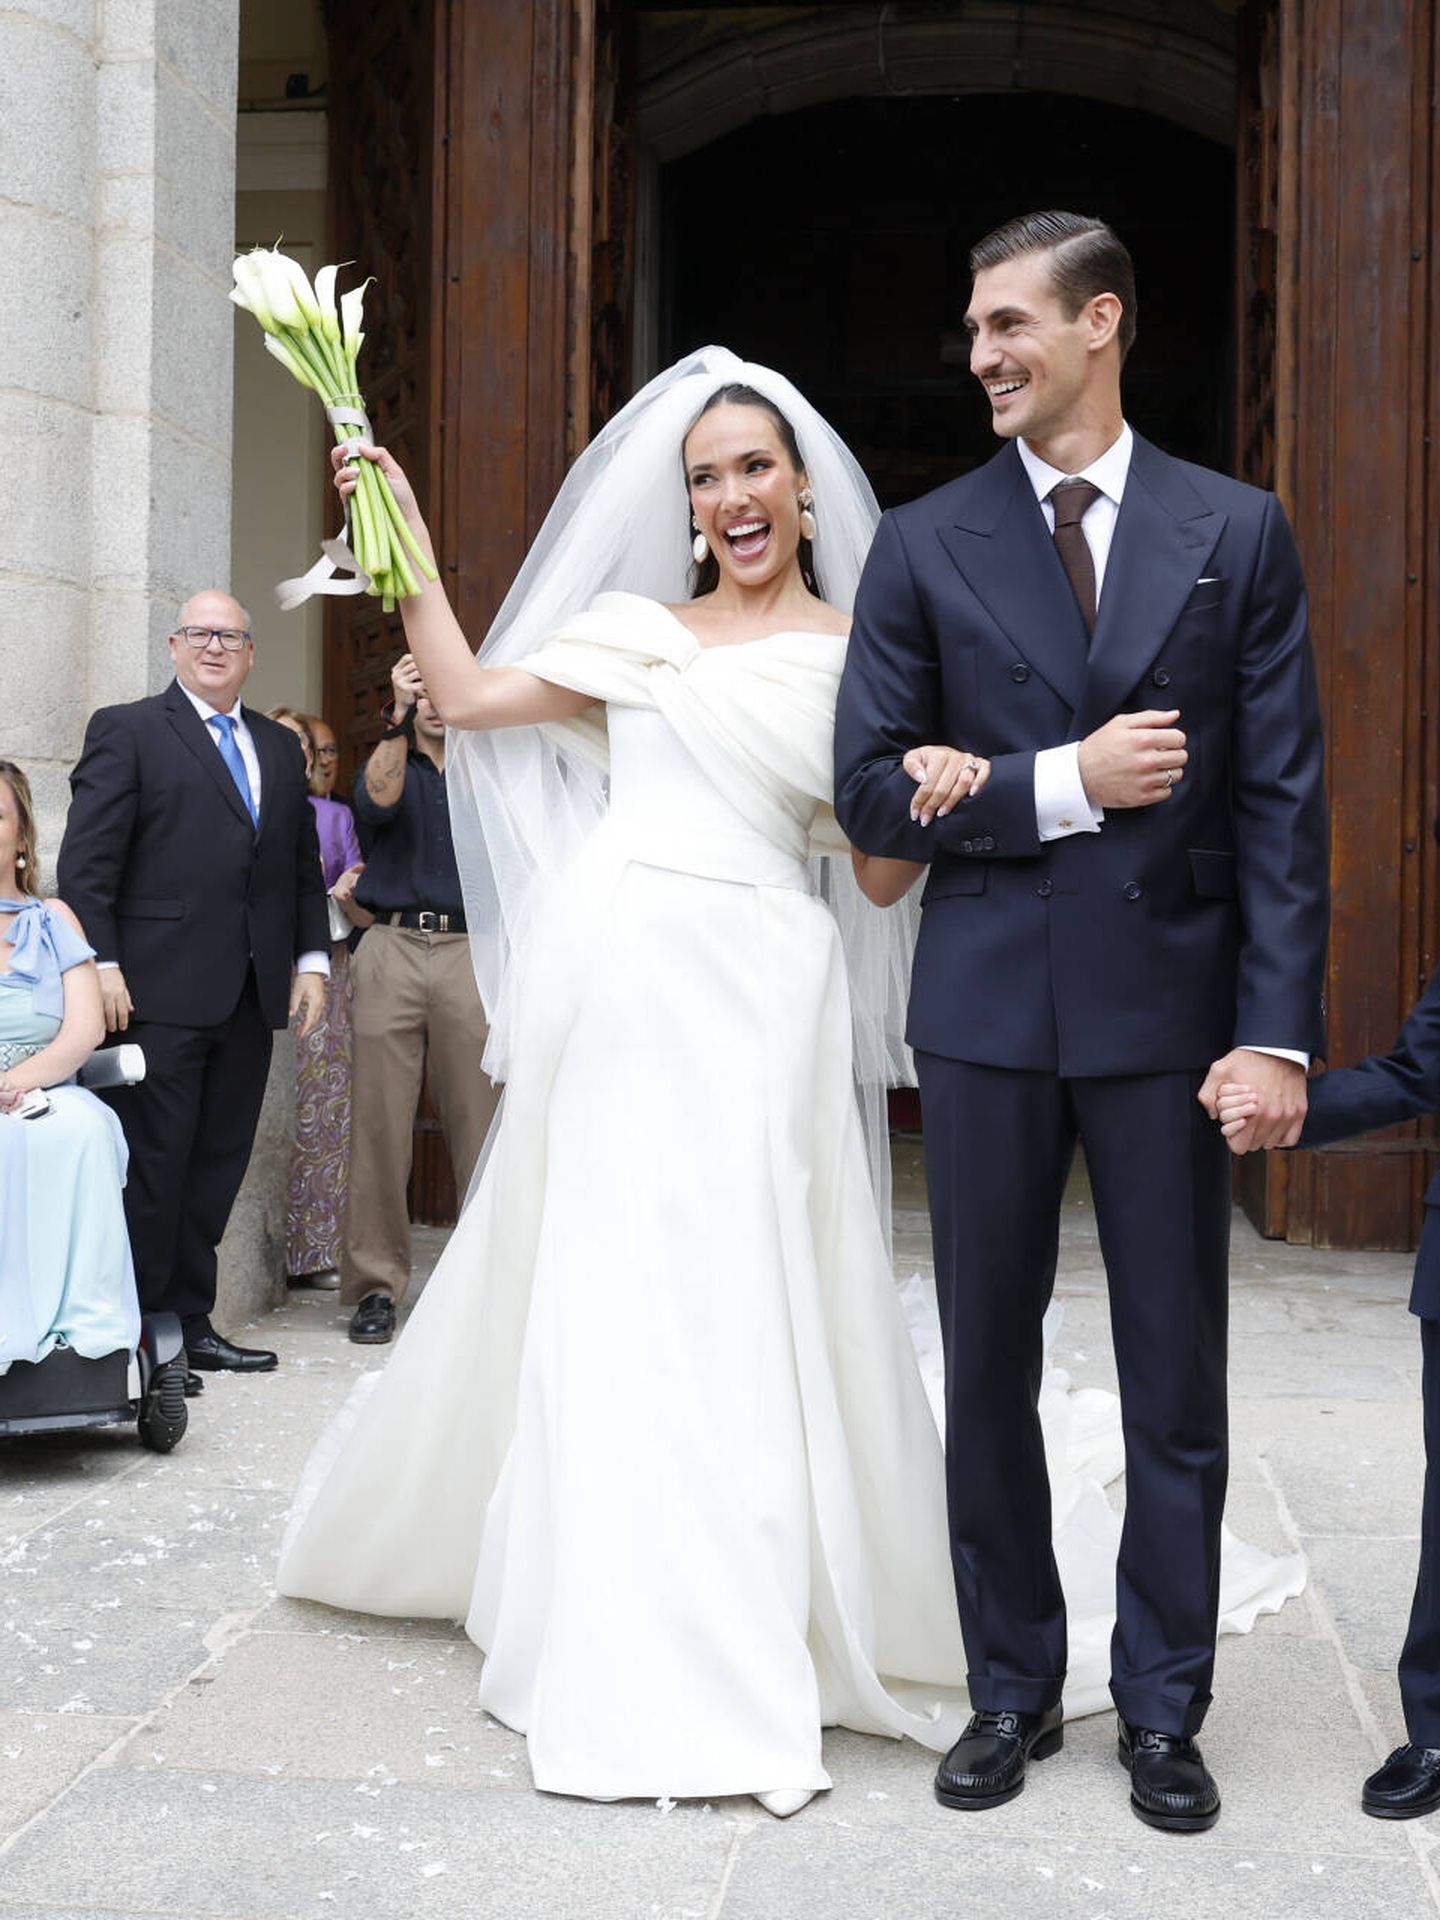 La boda de Ana Moya y Diego Conde. (Gtres)